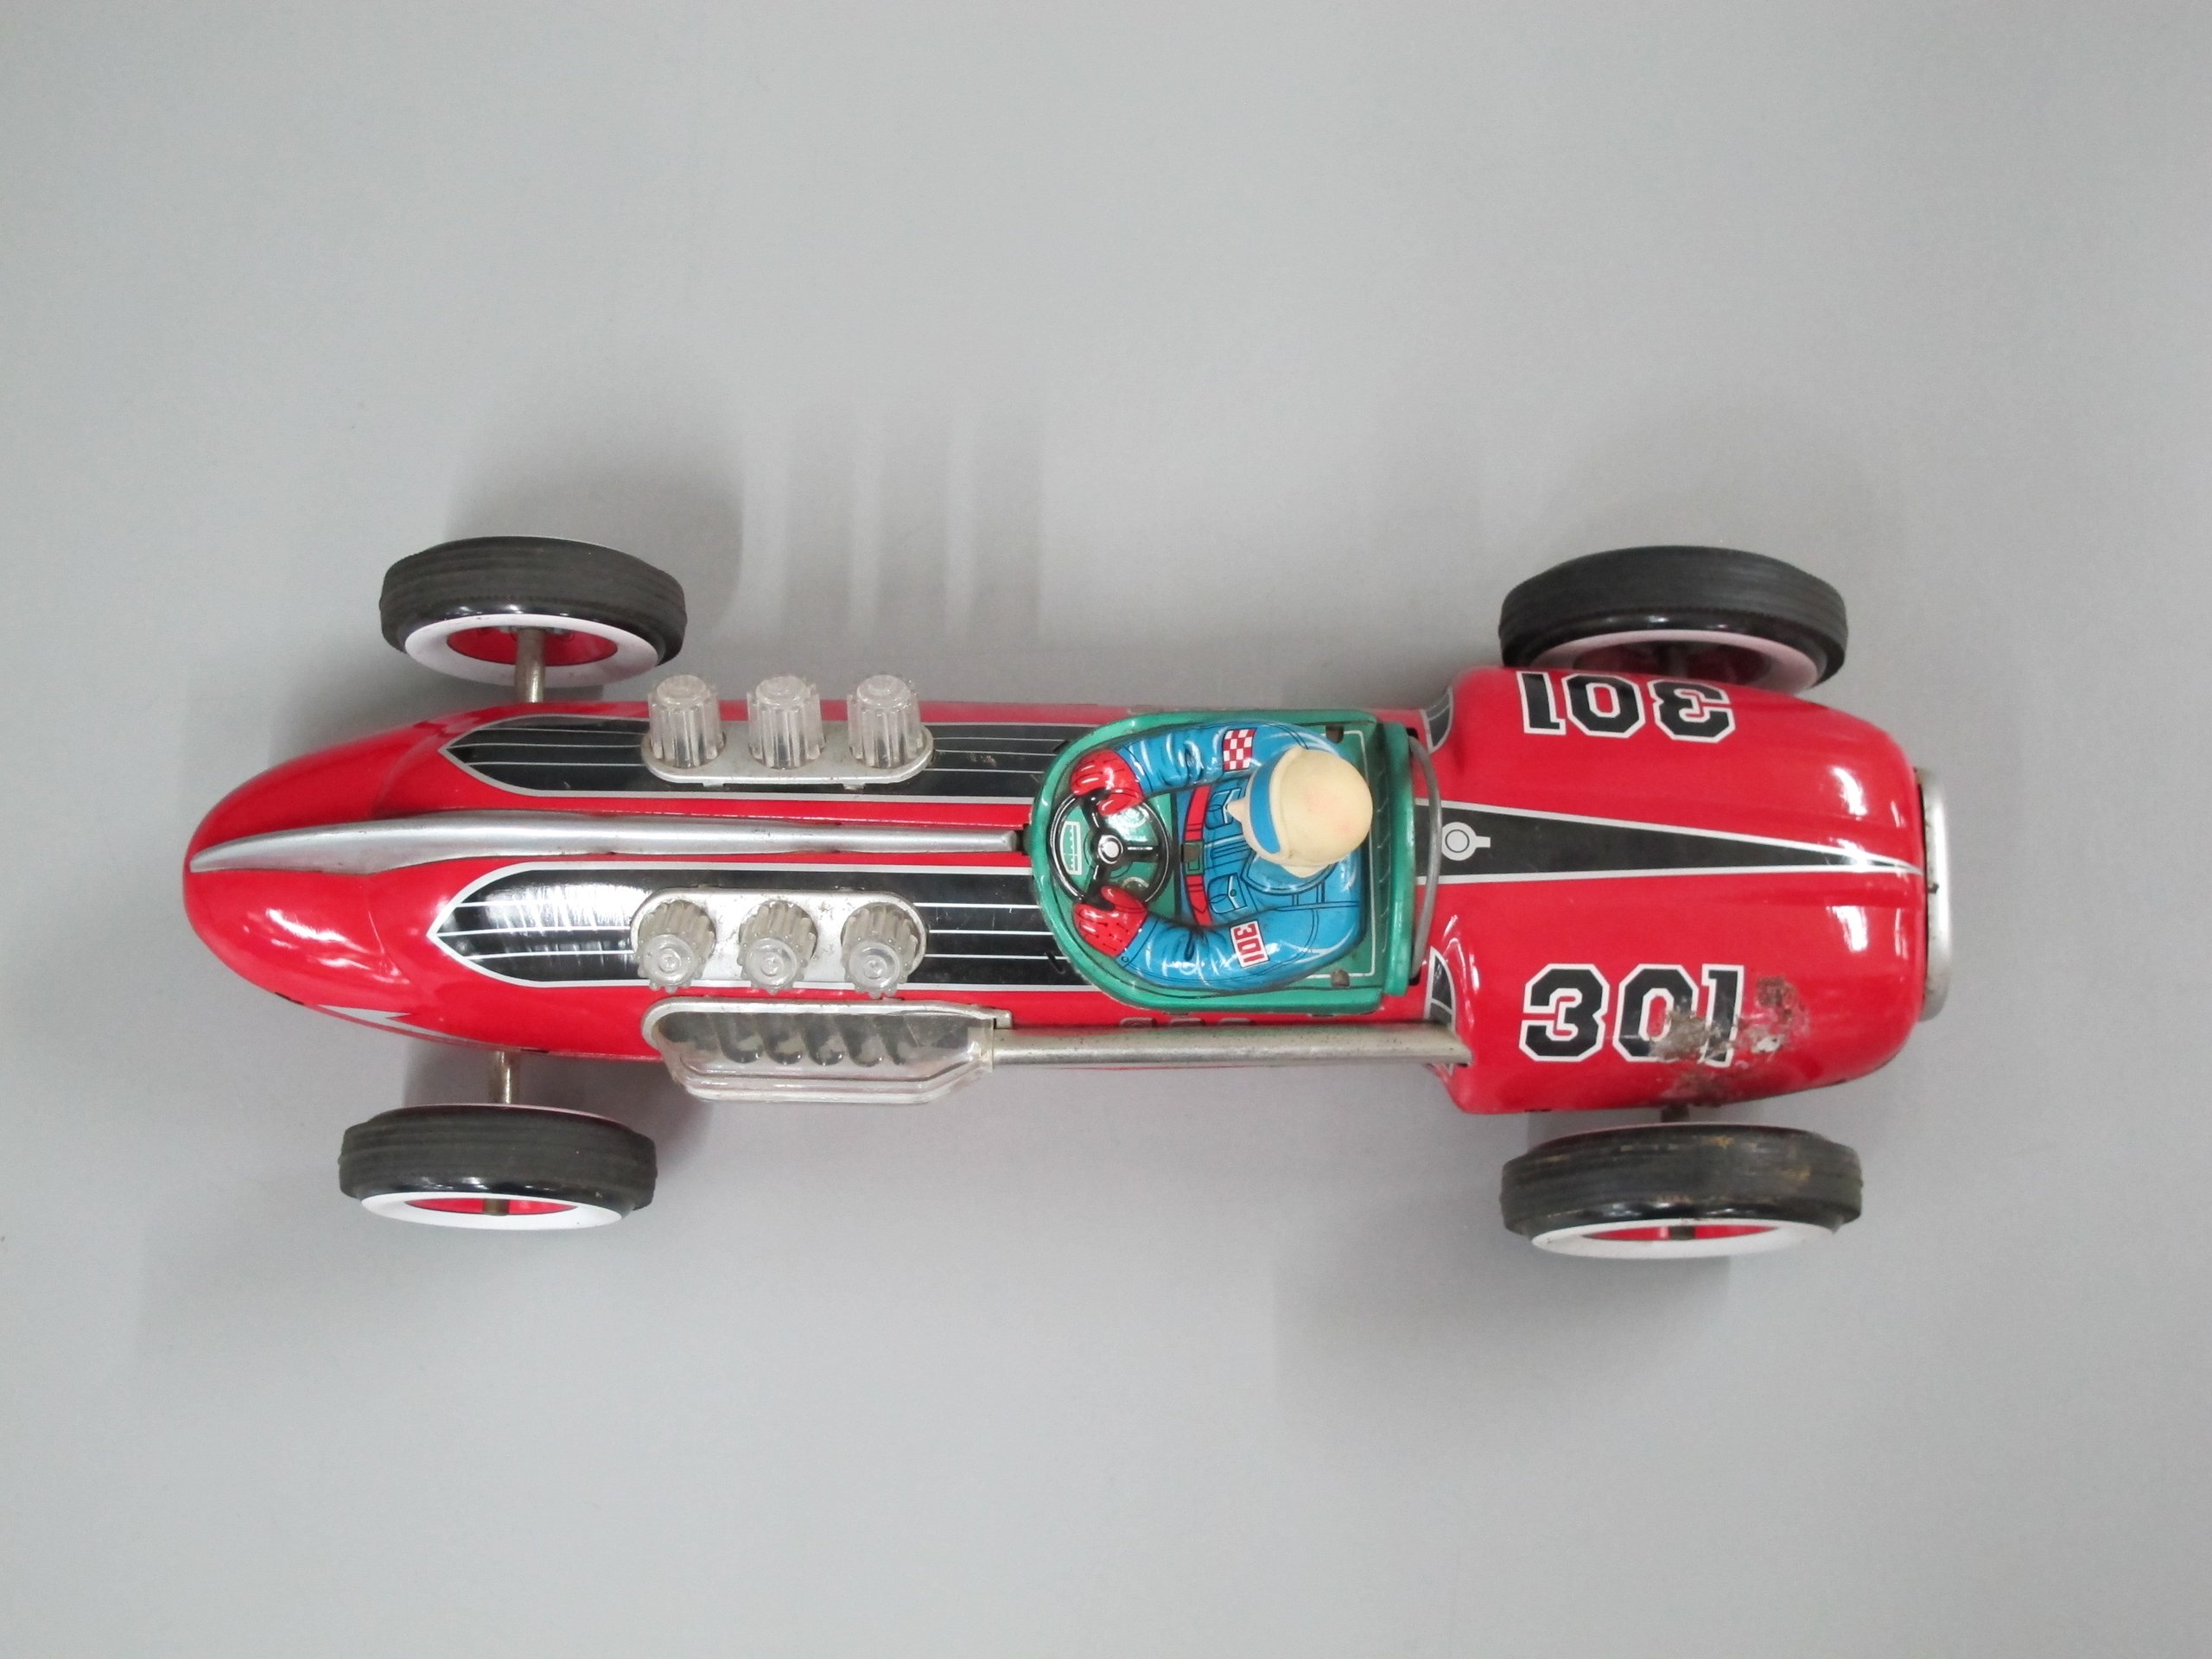 Toy racing car